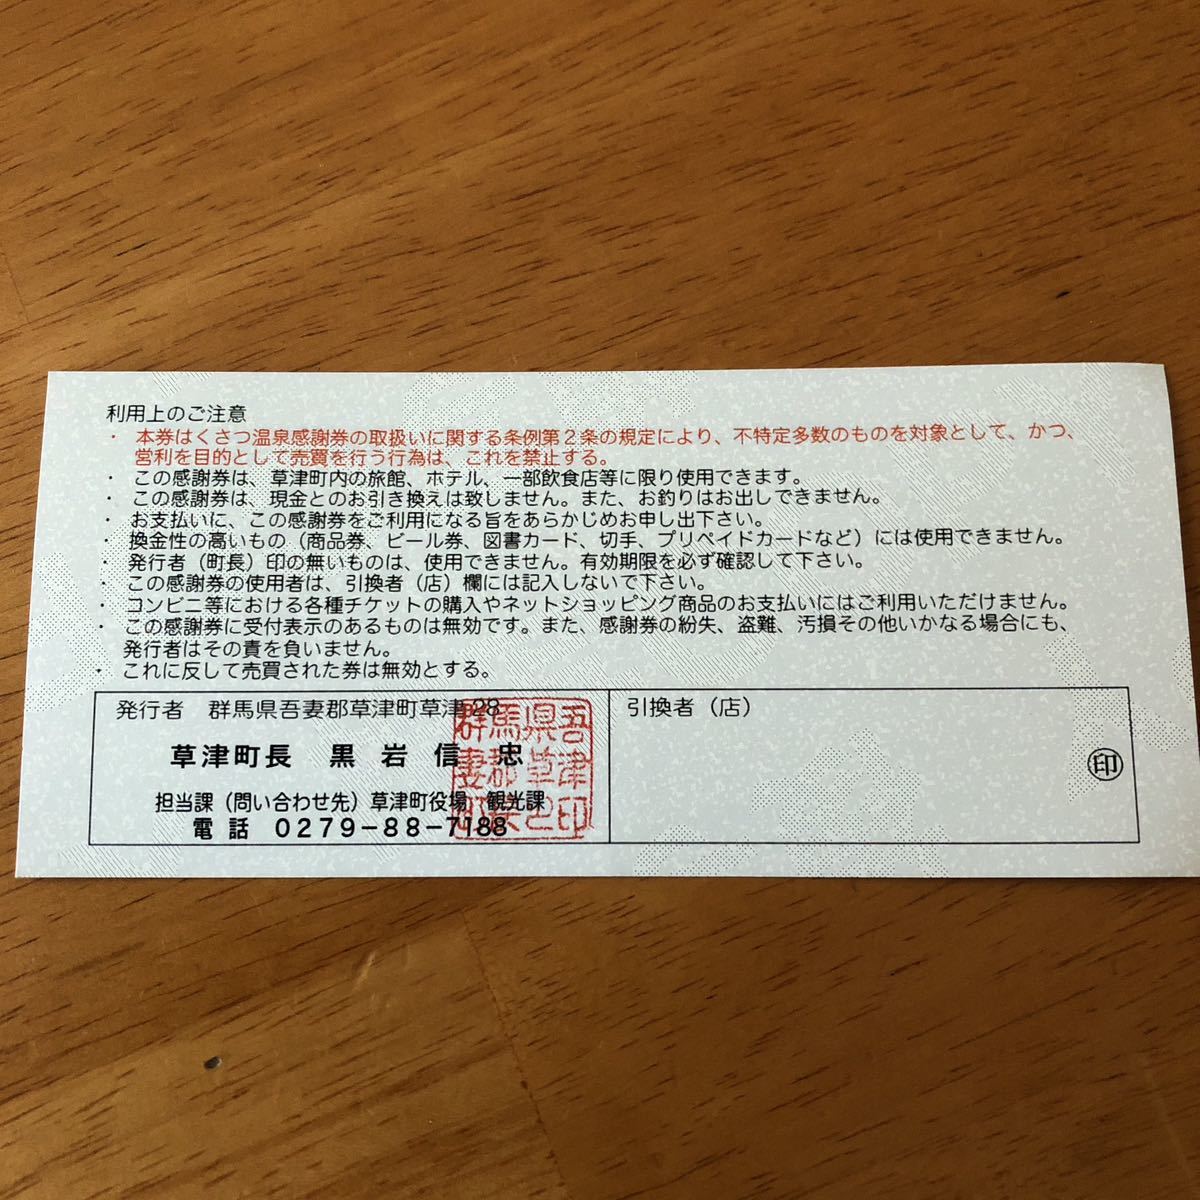 くさつ温泉感謝券 6万円分(1000円×60枚) 有効期限2024年10月 草津温泉